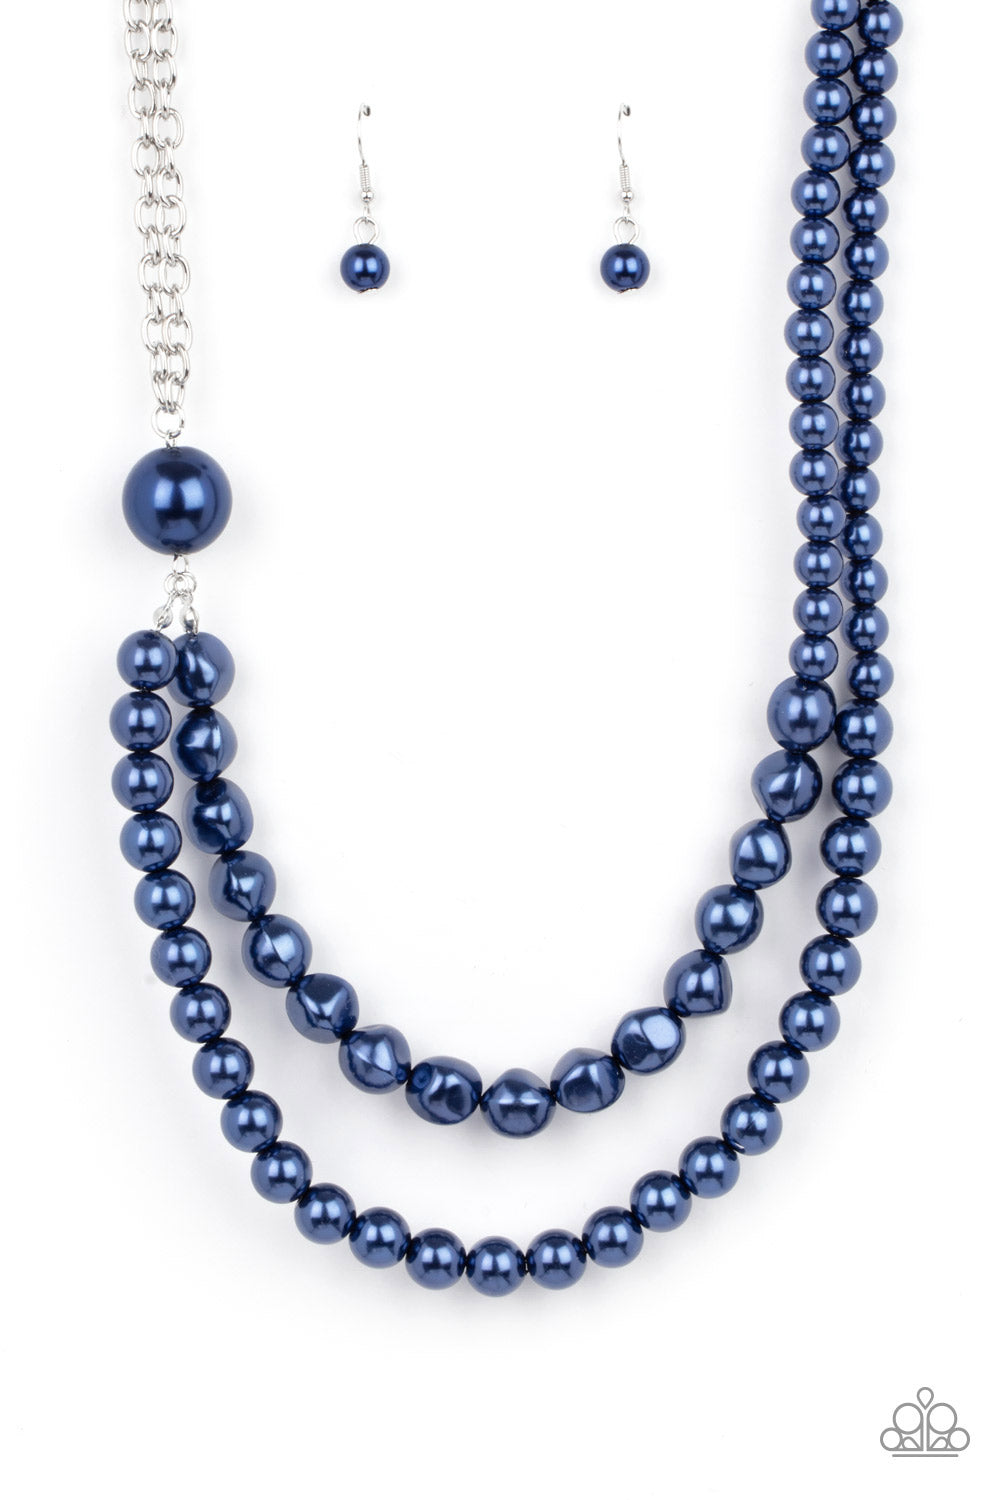 Remarkable Radiance Blue-Necklace